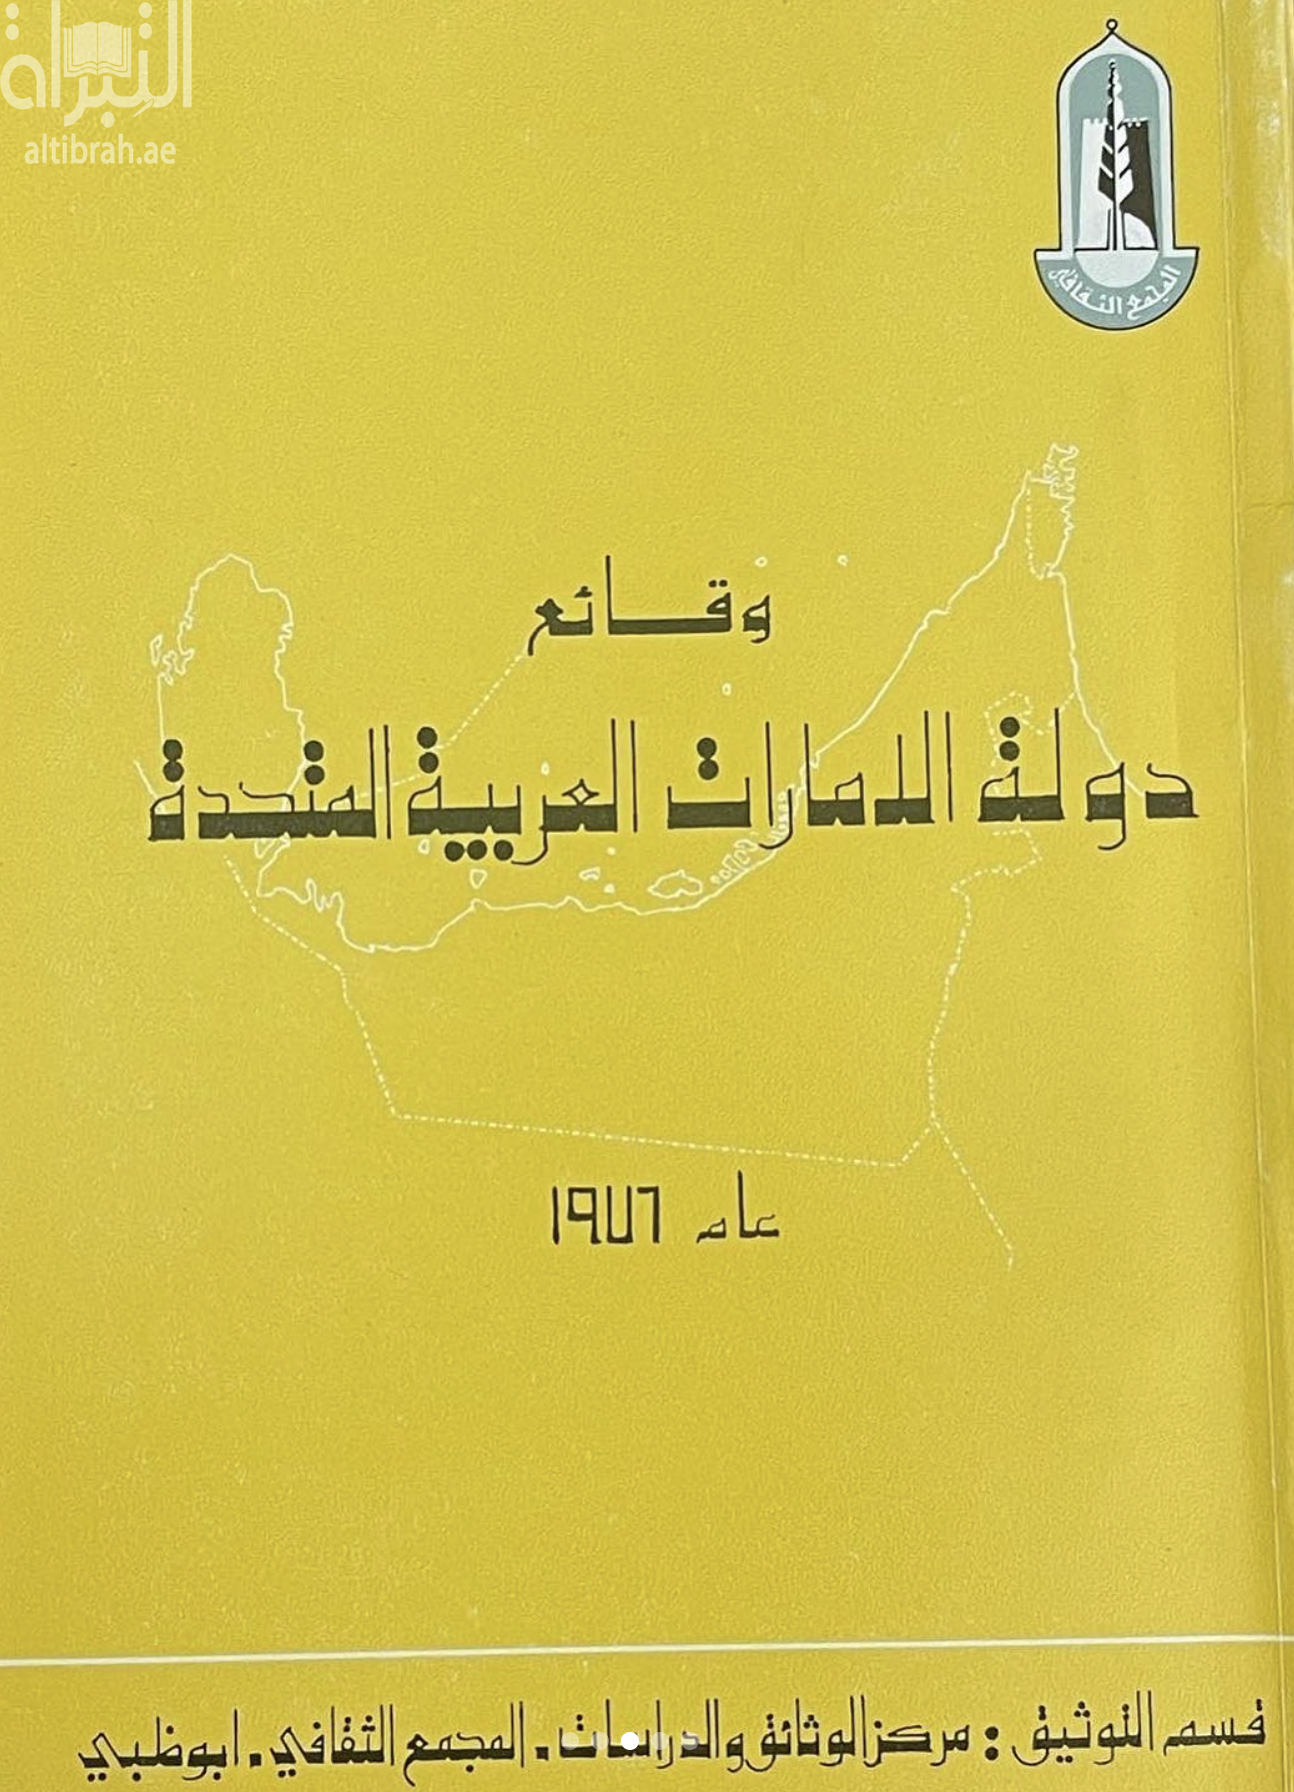 وقائع دولة الإمارات العربية المتحدة 1976